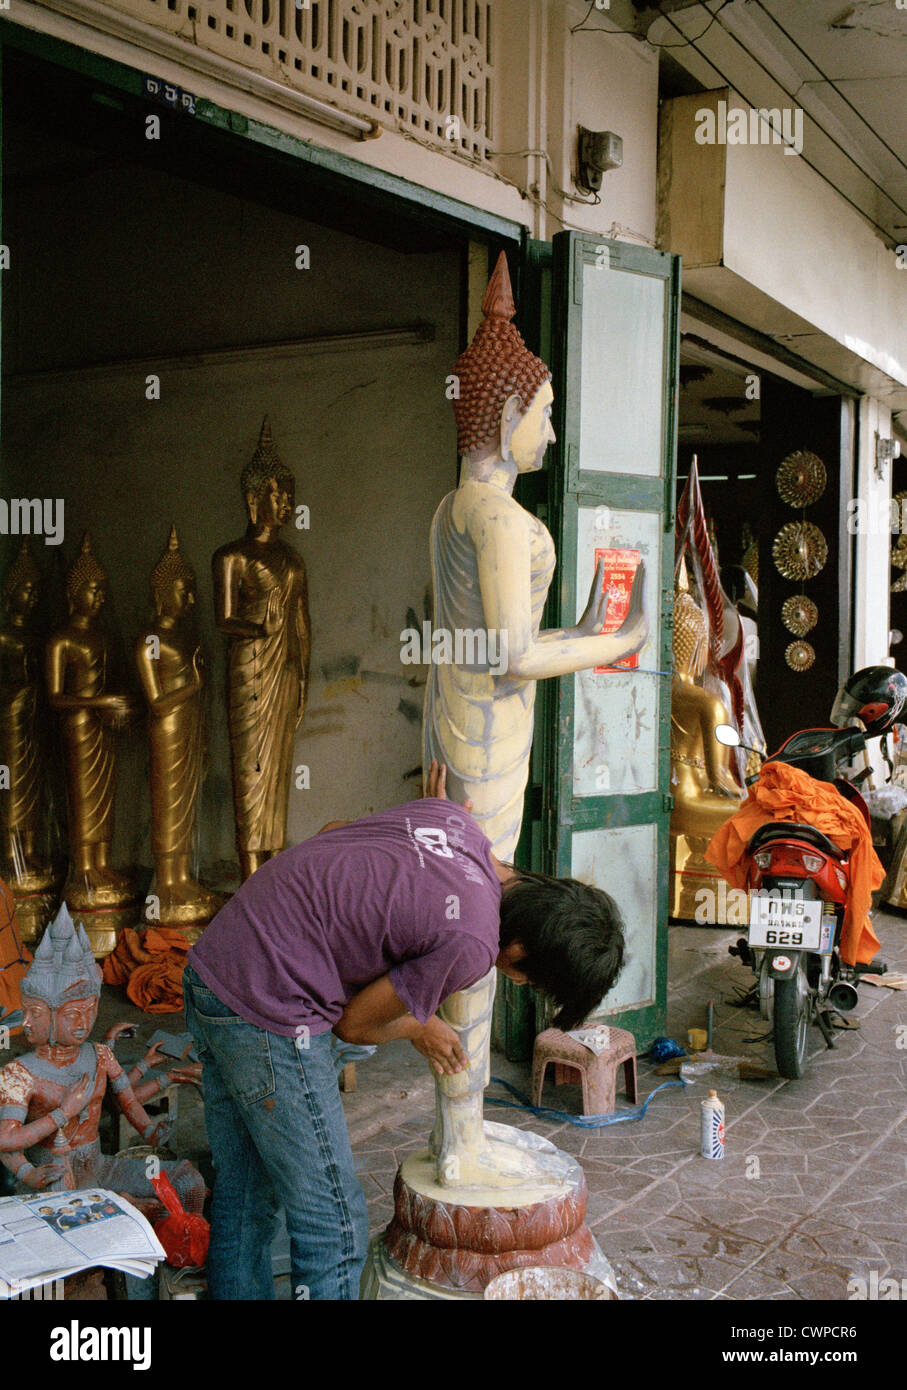 Scultura buddista a Bangkok in Thailandia nell'estremo Oriente del Sud-est asiatico. Persone Shop lavoro lavoro lavoratore Arte lavoro Reportage di affari Viaggi Foto Stock